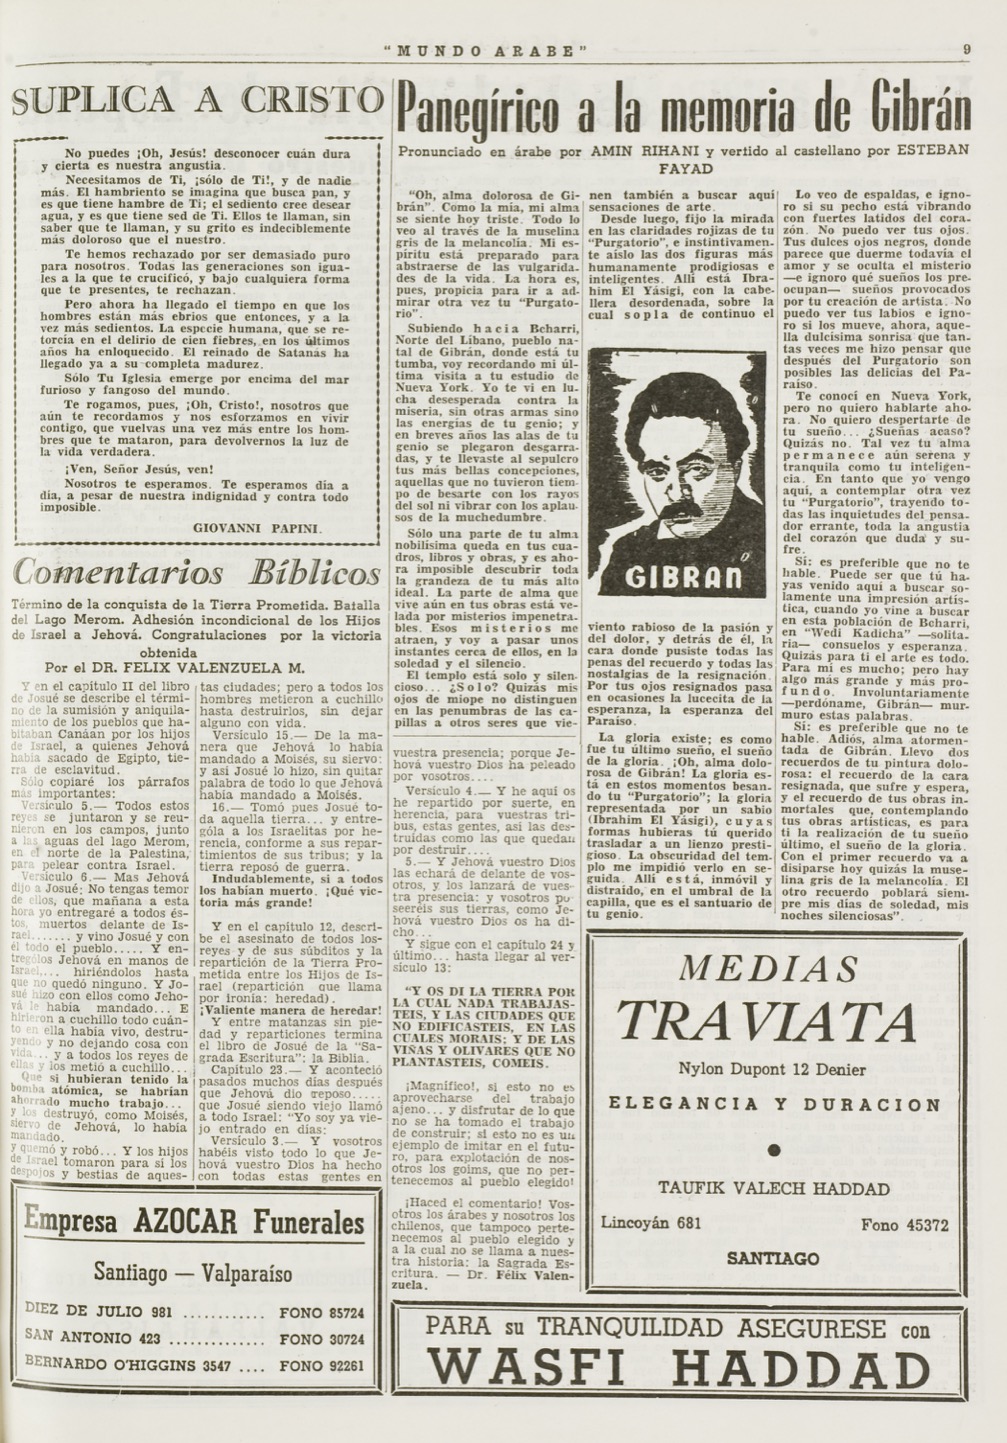 Esteban Fayad, "Panegirico a la memoria de Gibran", Mundo Árabe, Jun 14, 1957, p. 9.